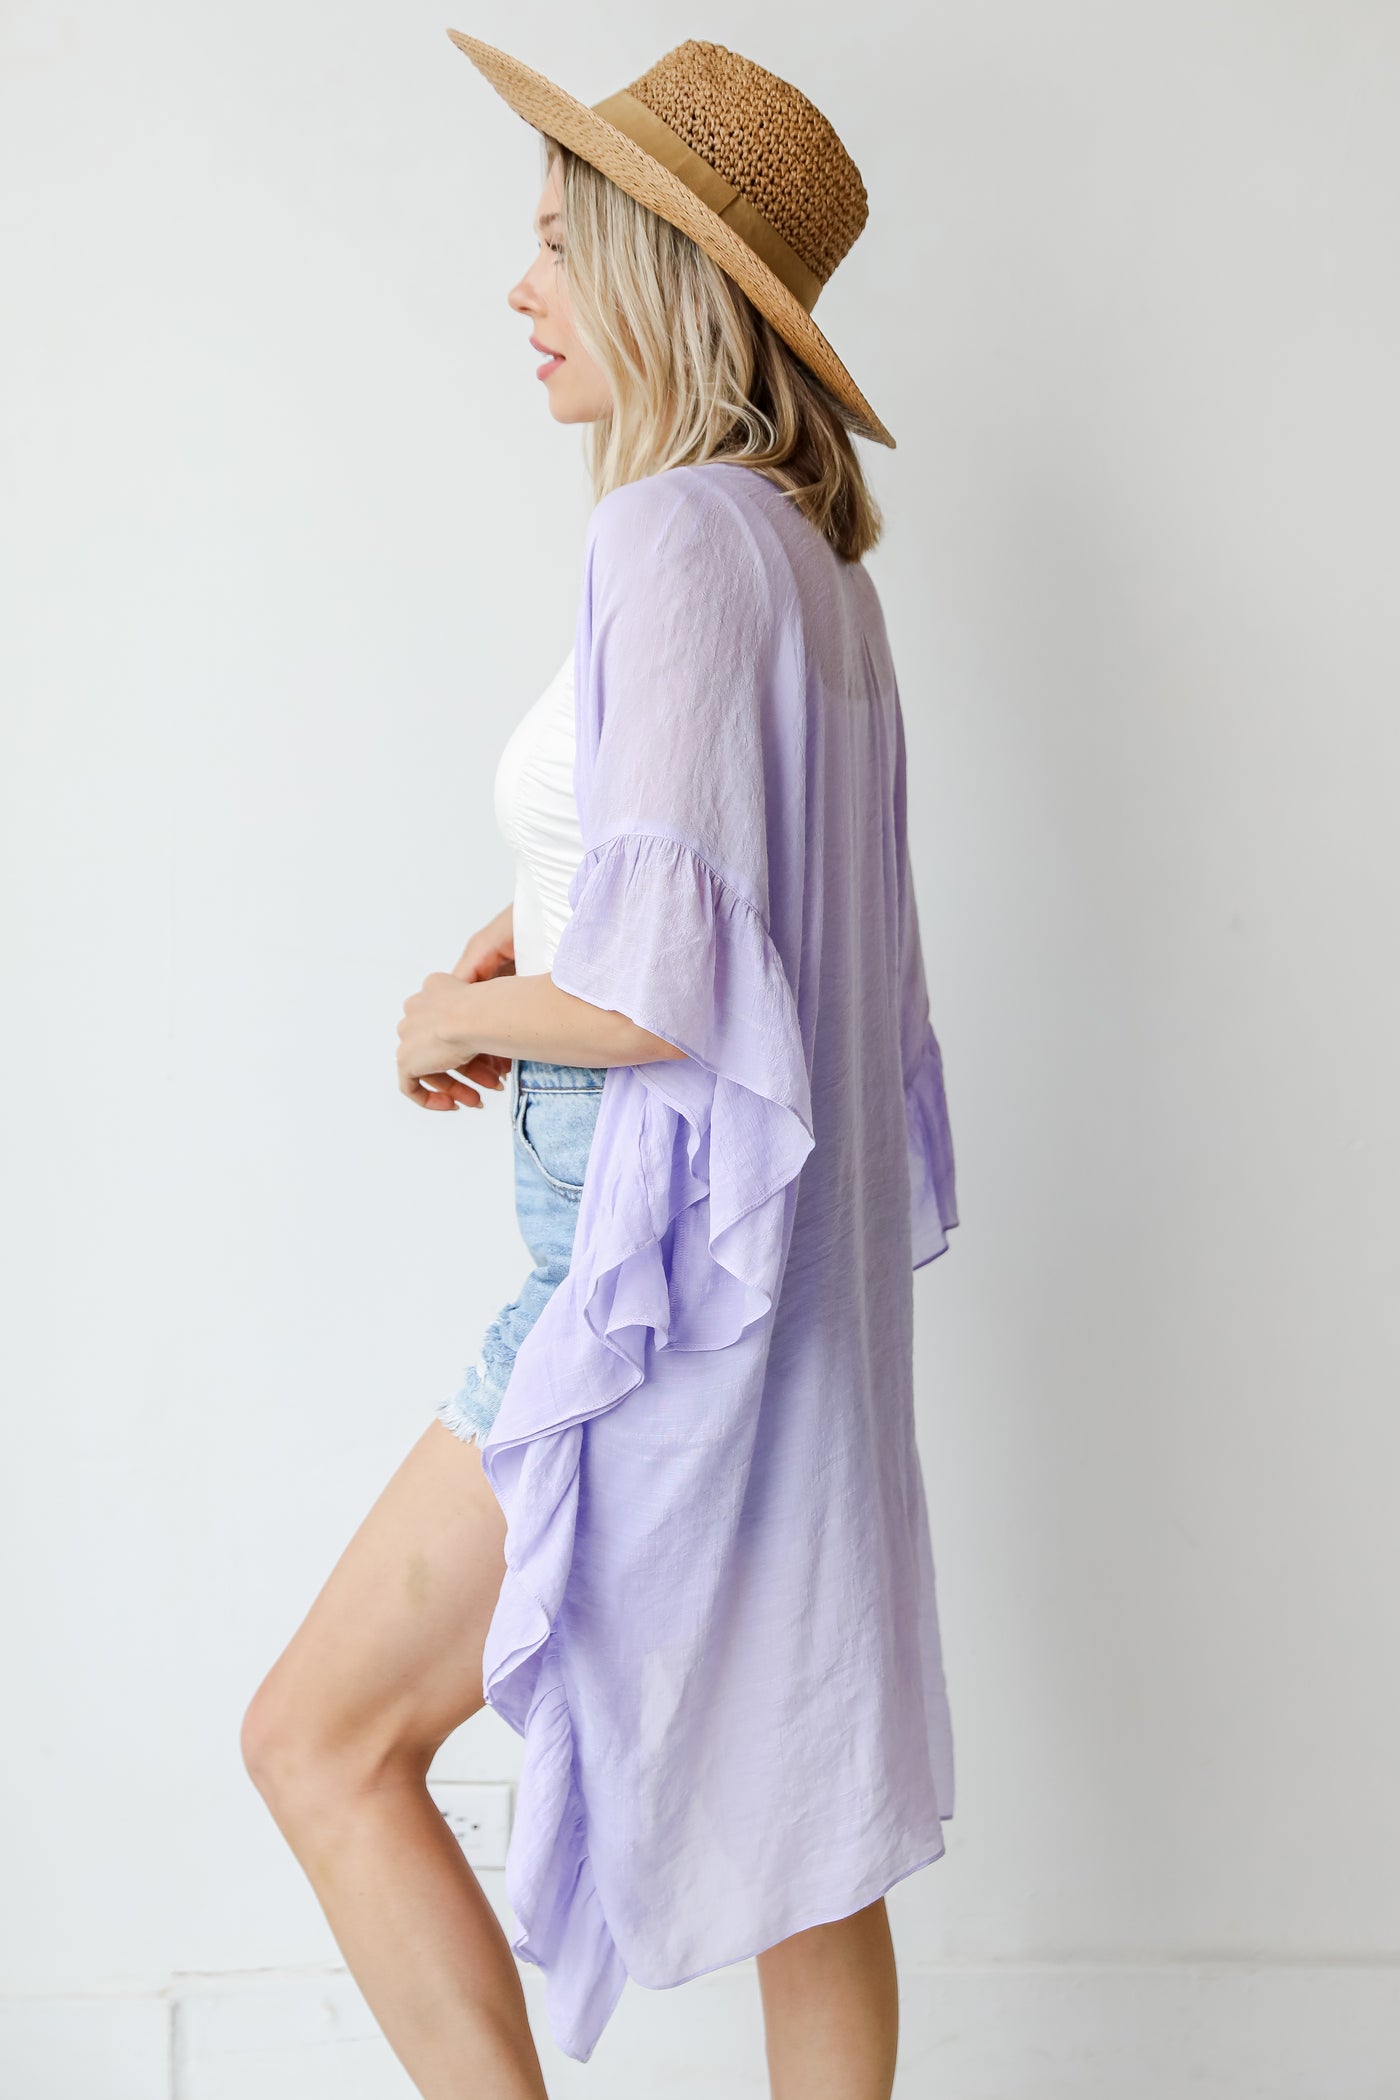 Kimono in lilac side view